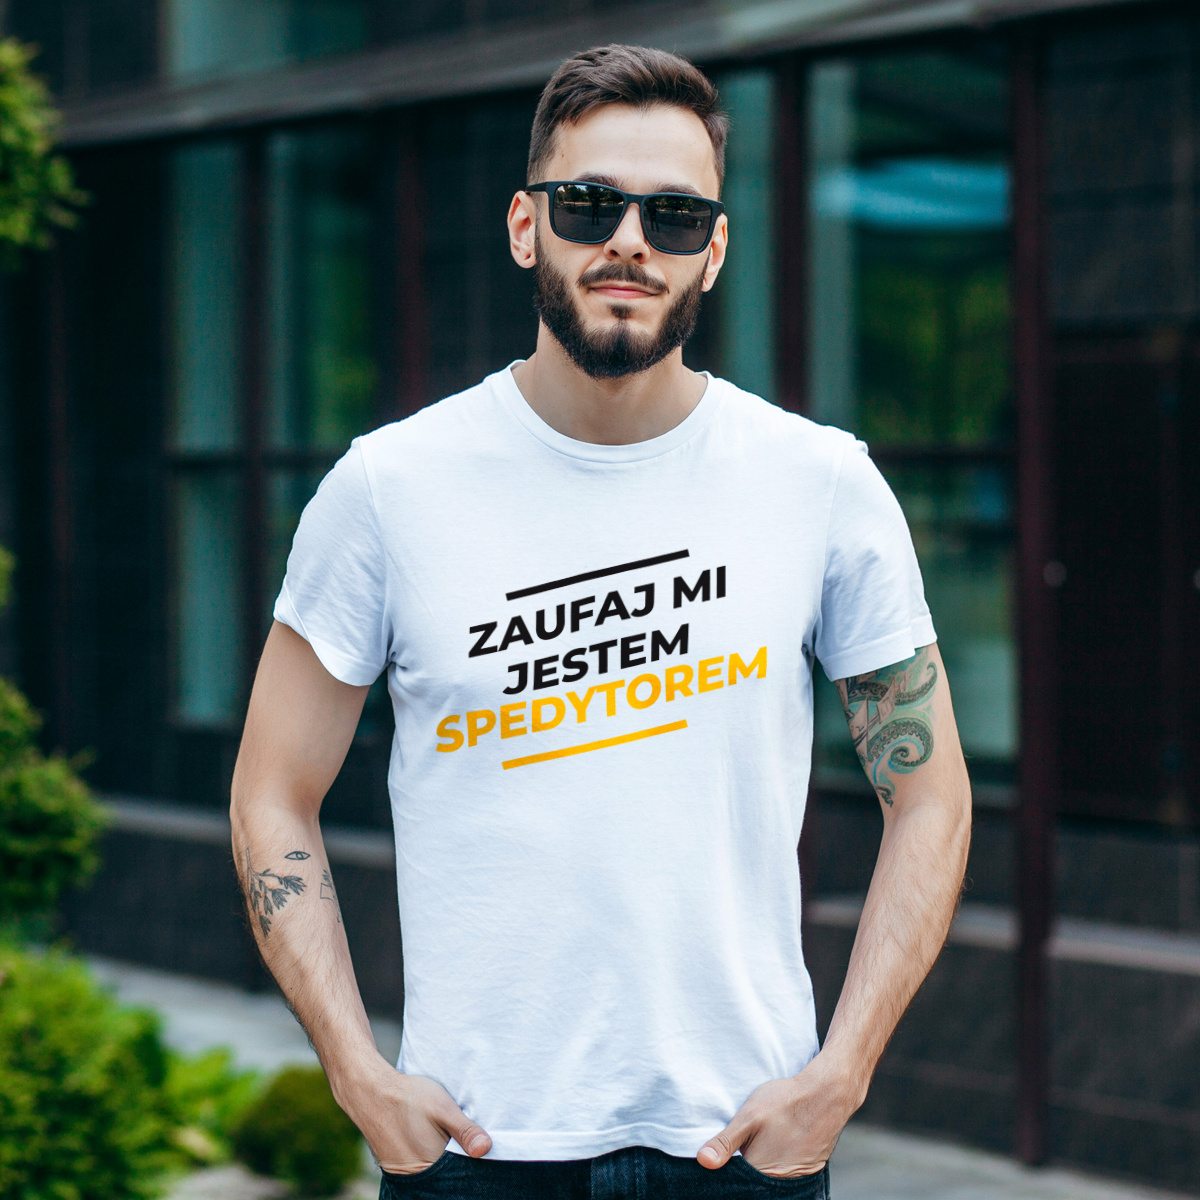 Zaufaj Mi Jestem Spedytorem - Męska Koszulka Biała